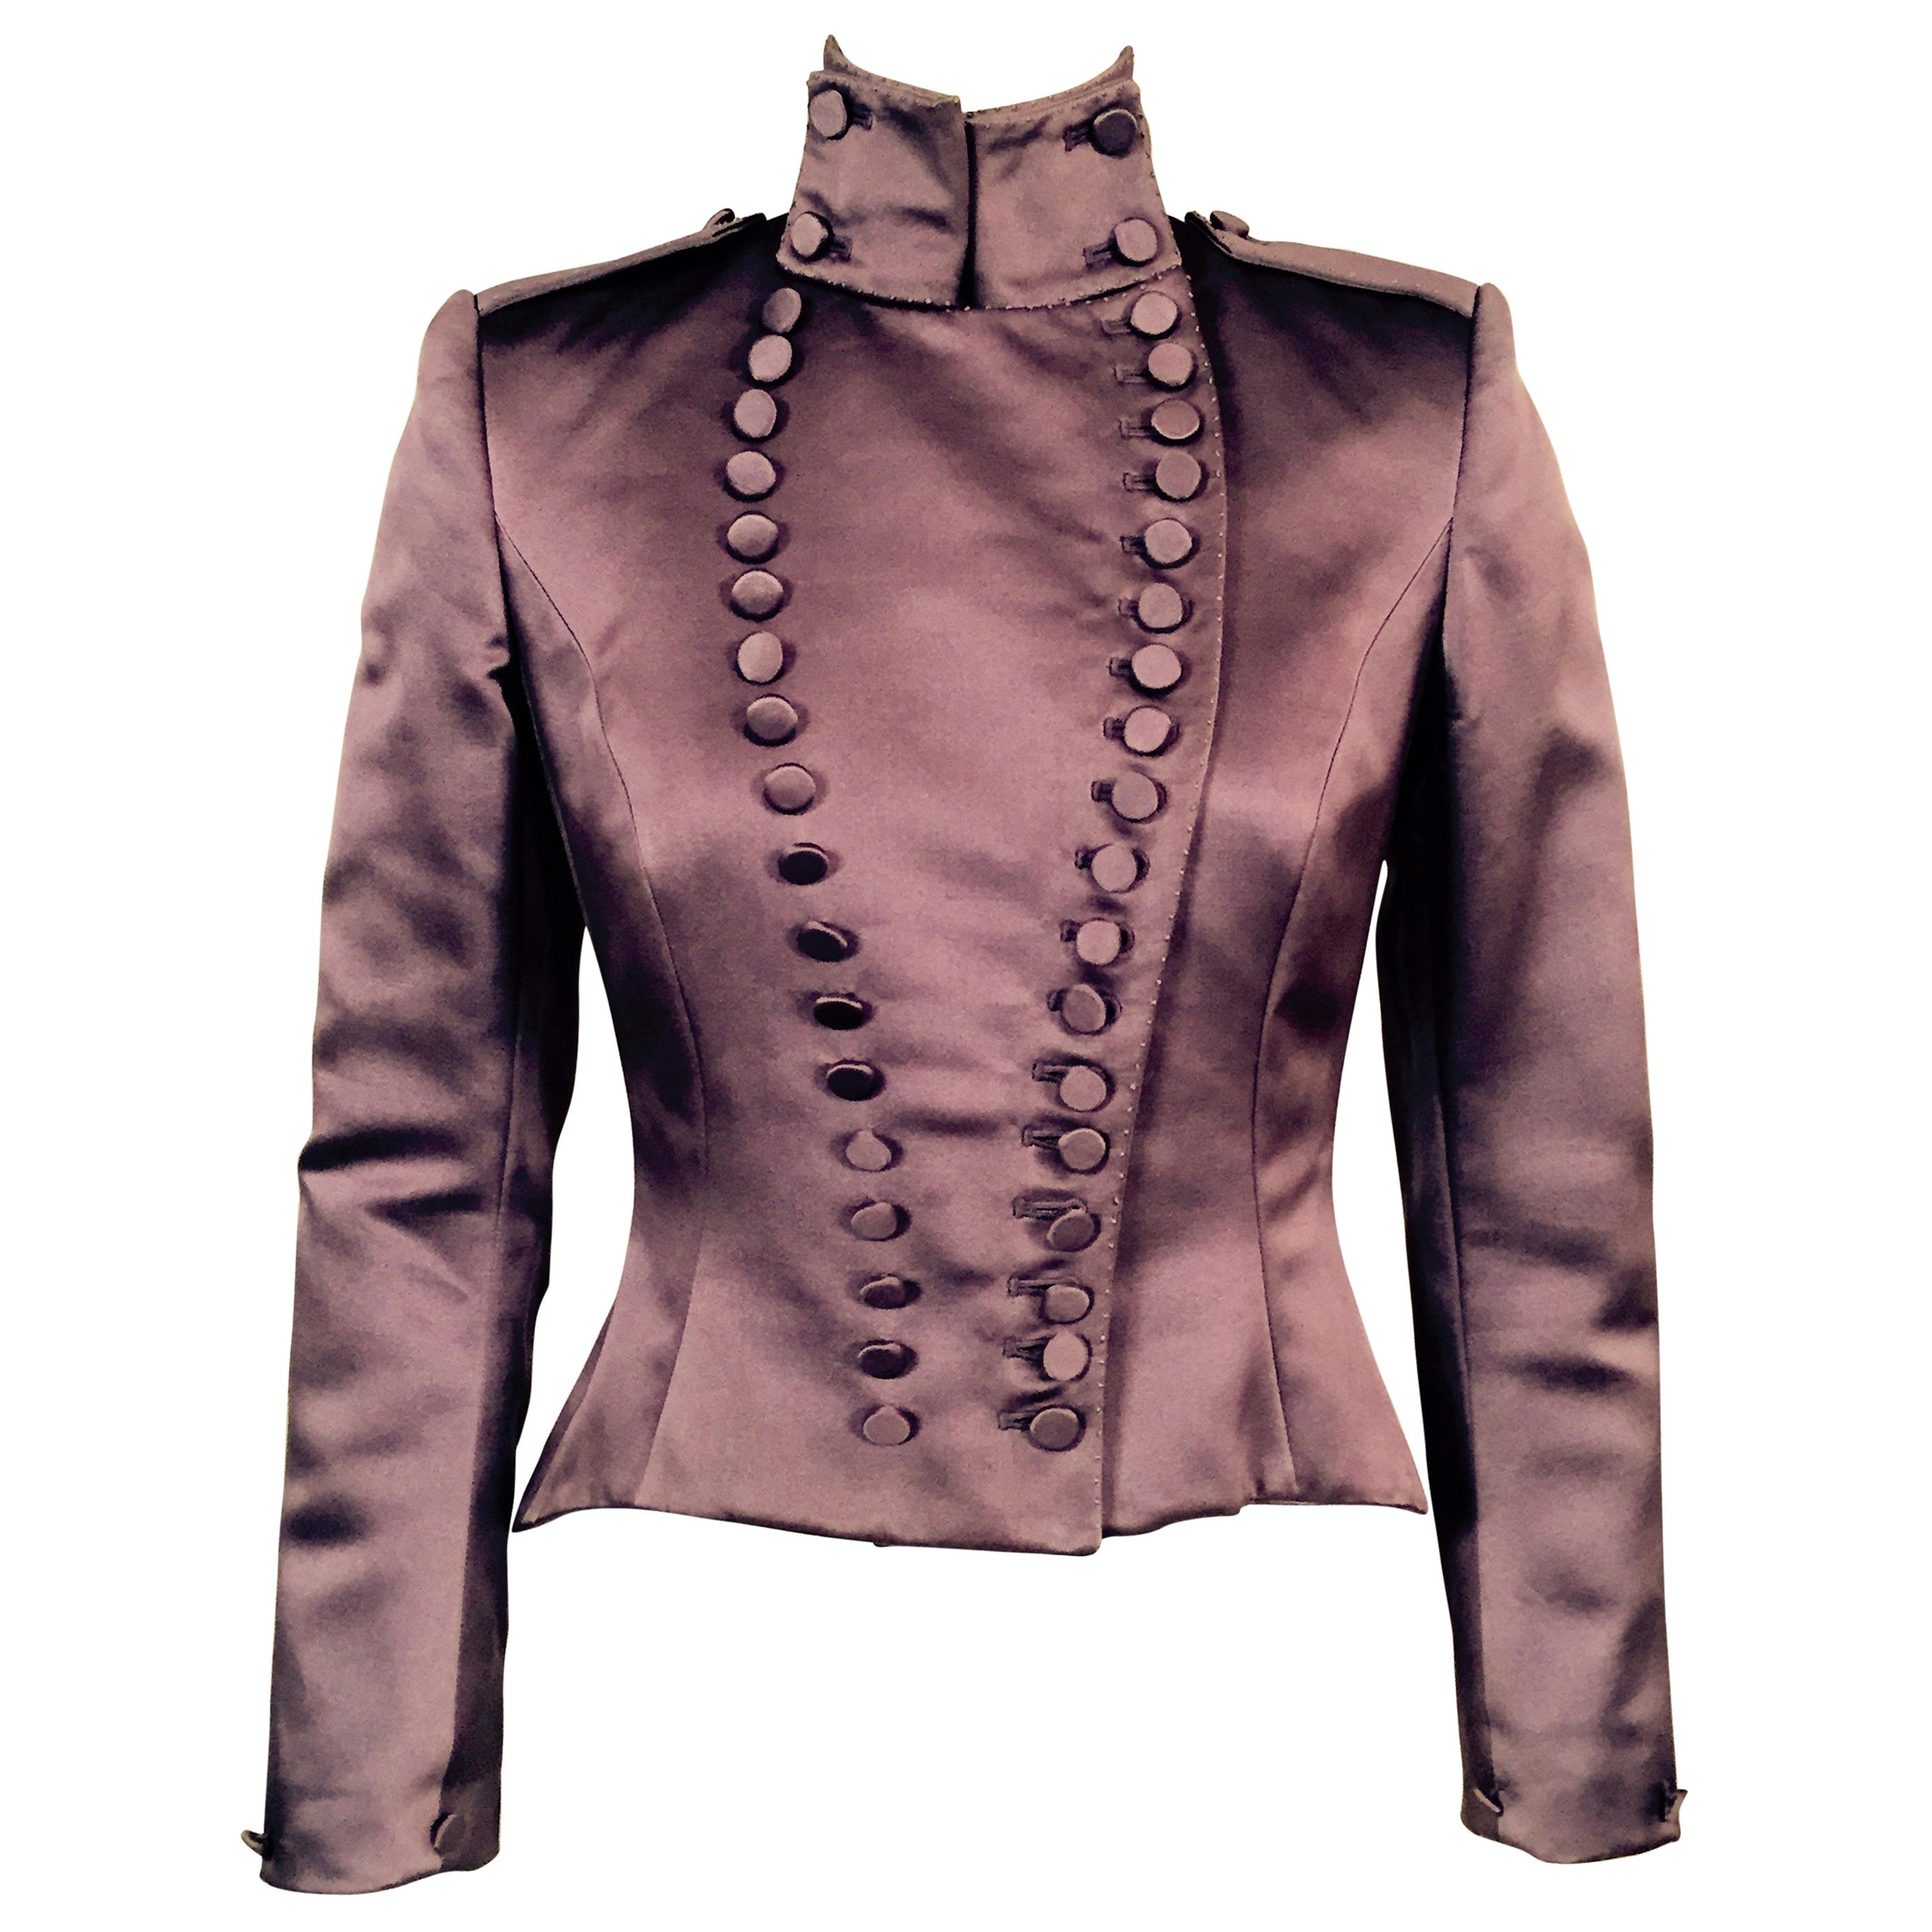 Jacke im viktorianischen Stil aus lilafarbenem Seidensatin:: entworfen von Maggie Norris Couture